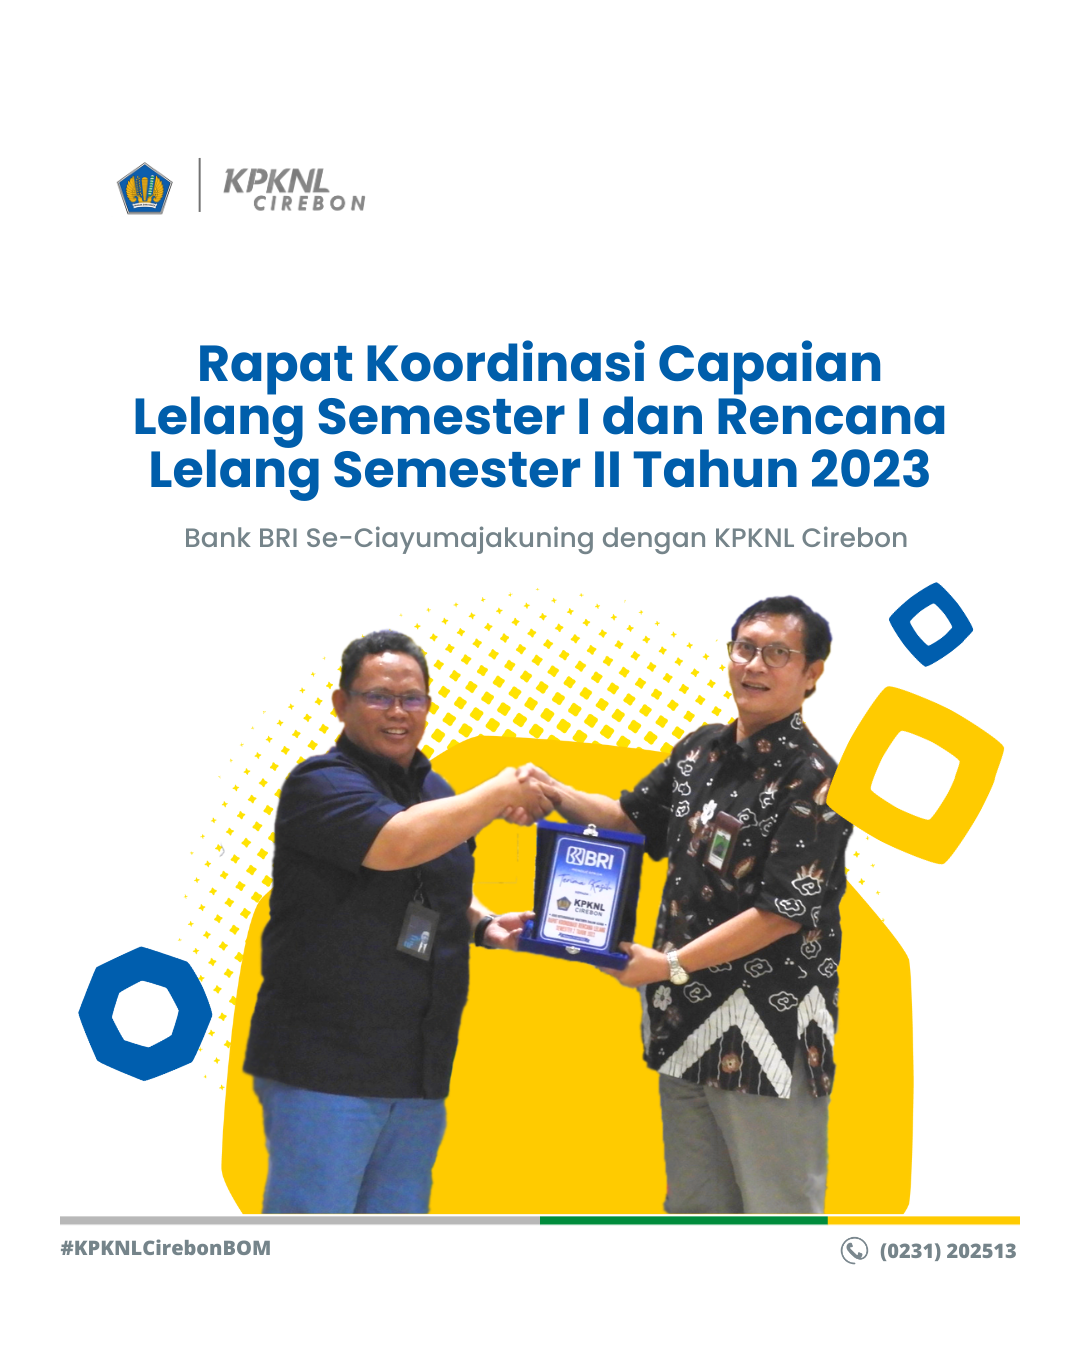 Rapat Koordinasi Capaian Lelang Semester I dan Rencana Lelang Semester II Tahun 2023 Bank BRI Se-Ciayumajakuning dengan KPKNL Cirebon